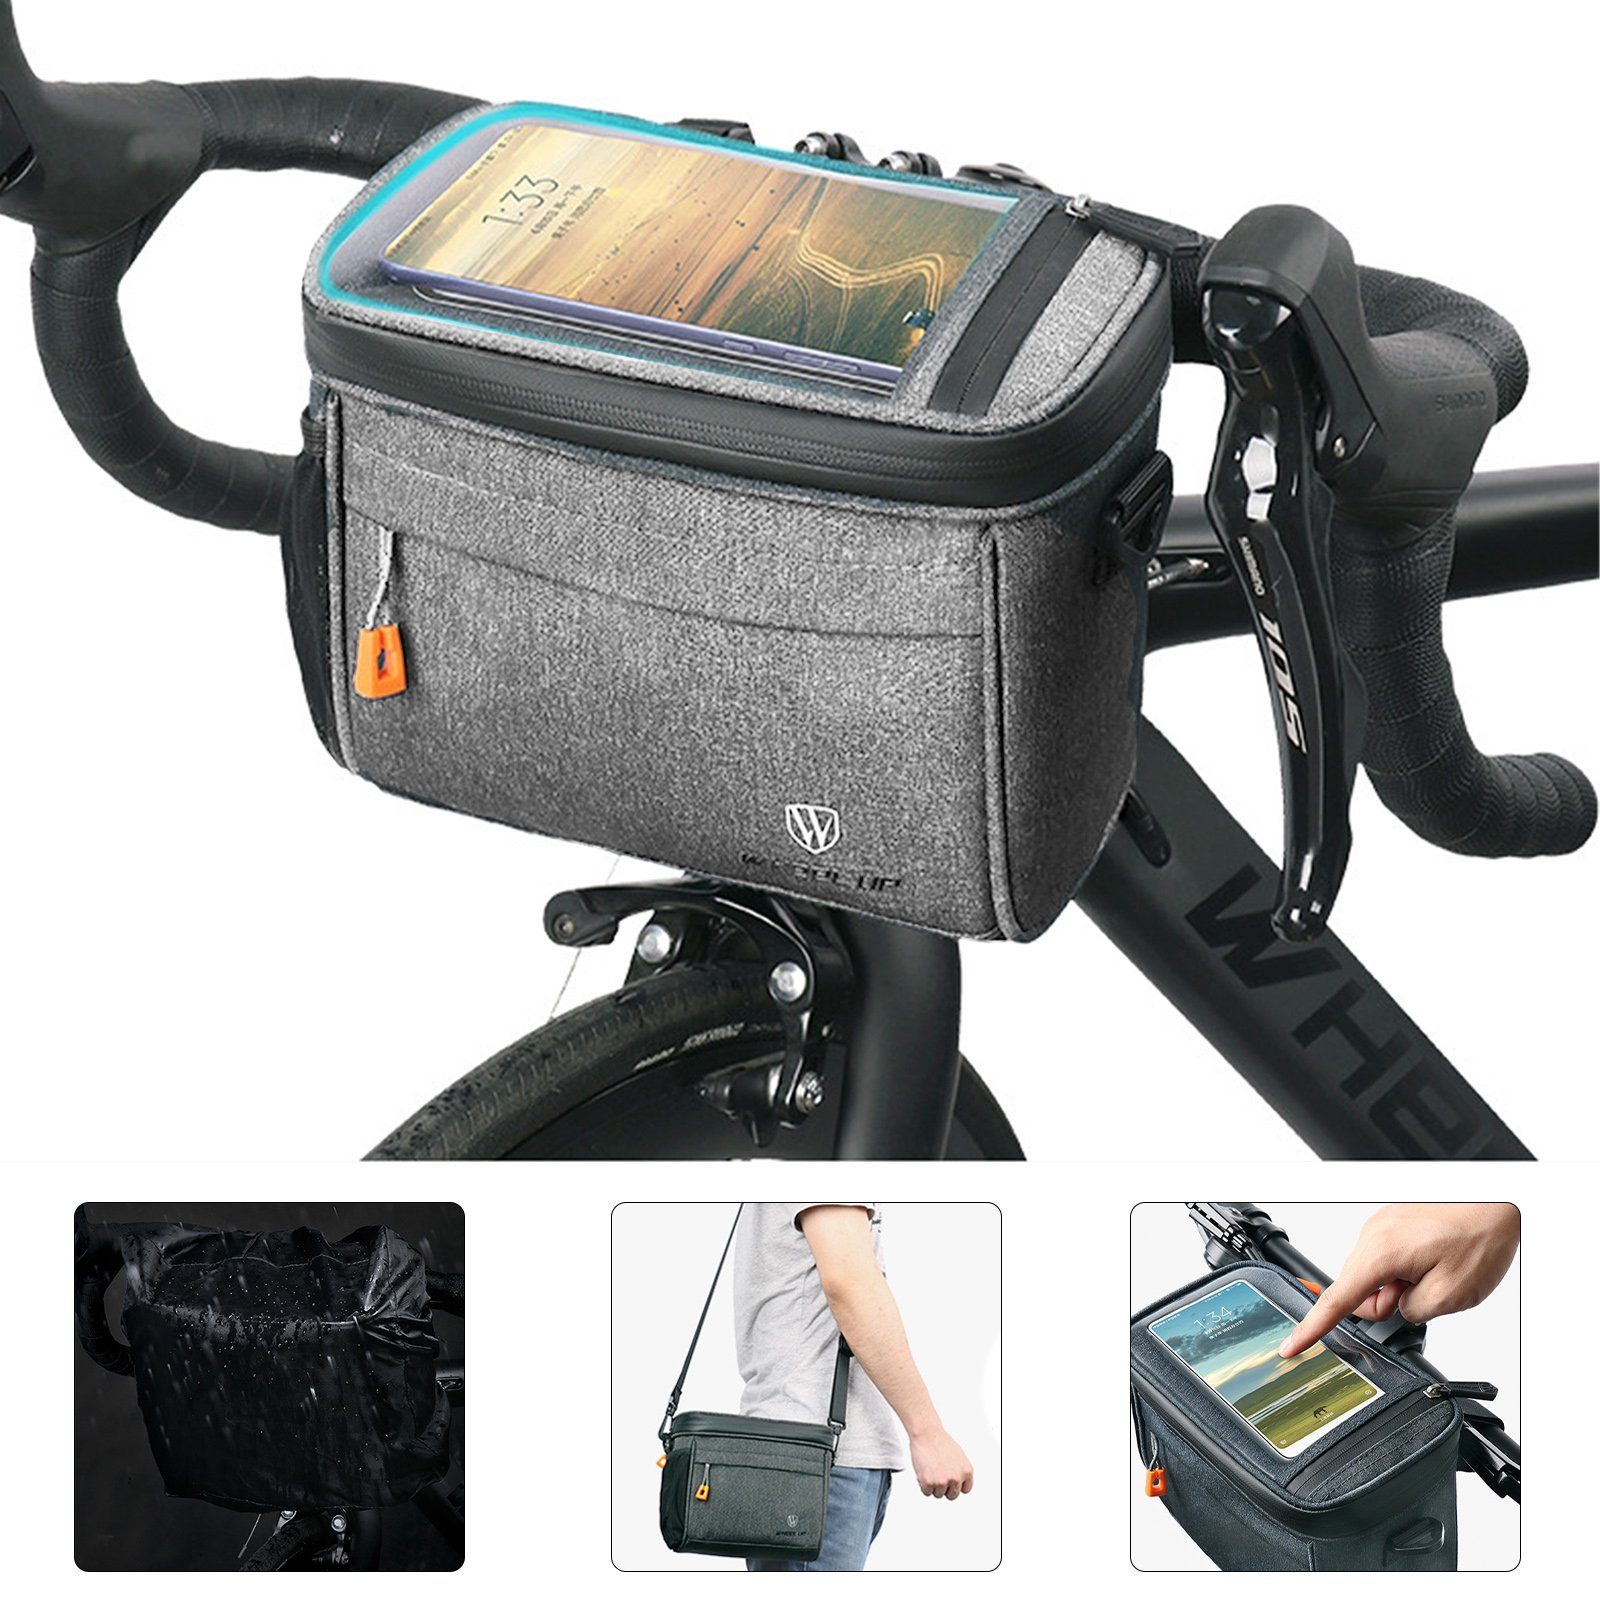 CALIYO Handy-Lenkertasche Lenkertasche Fahrrad mit lenkeradapter, 4.2L fahrradkorb vorne Tasche, mit transparenter Touchscreen und abnehmbarem Schultergurt Grau